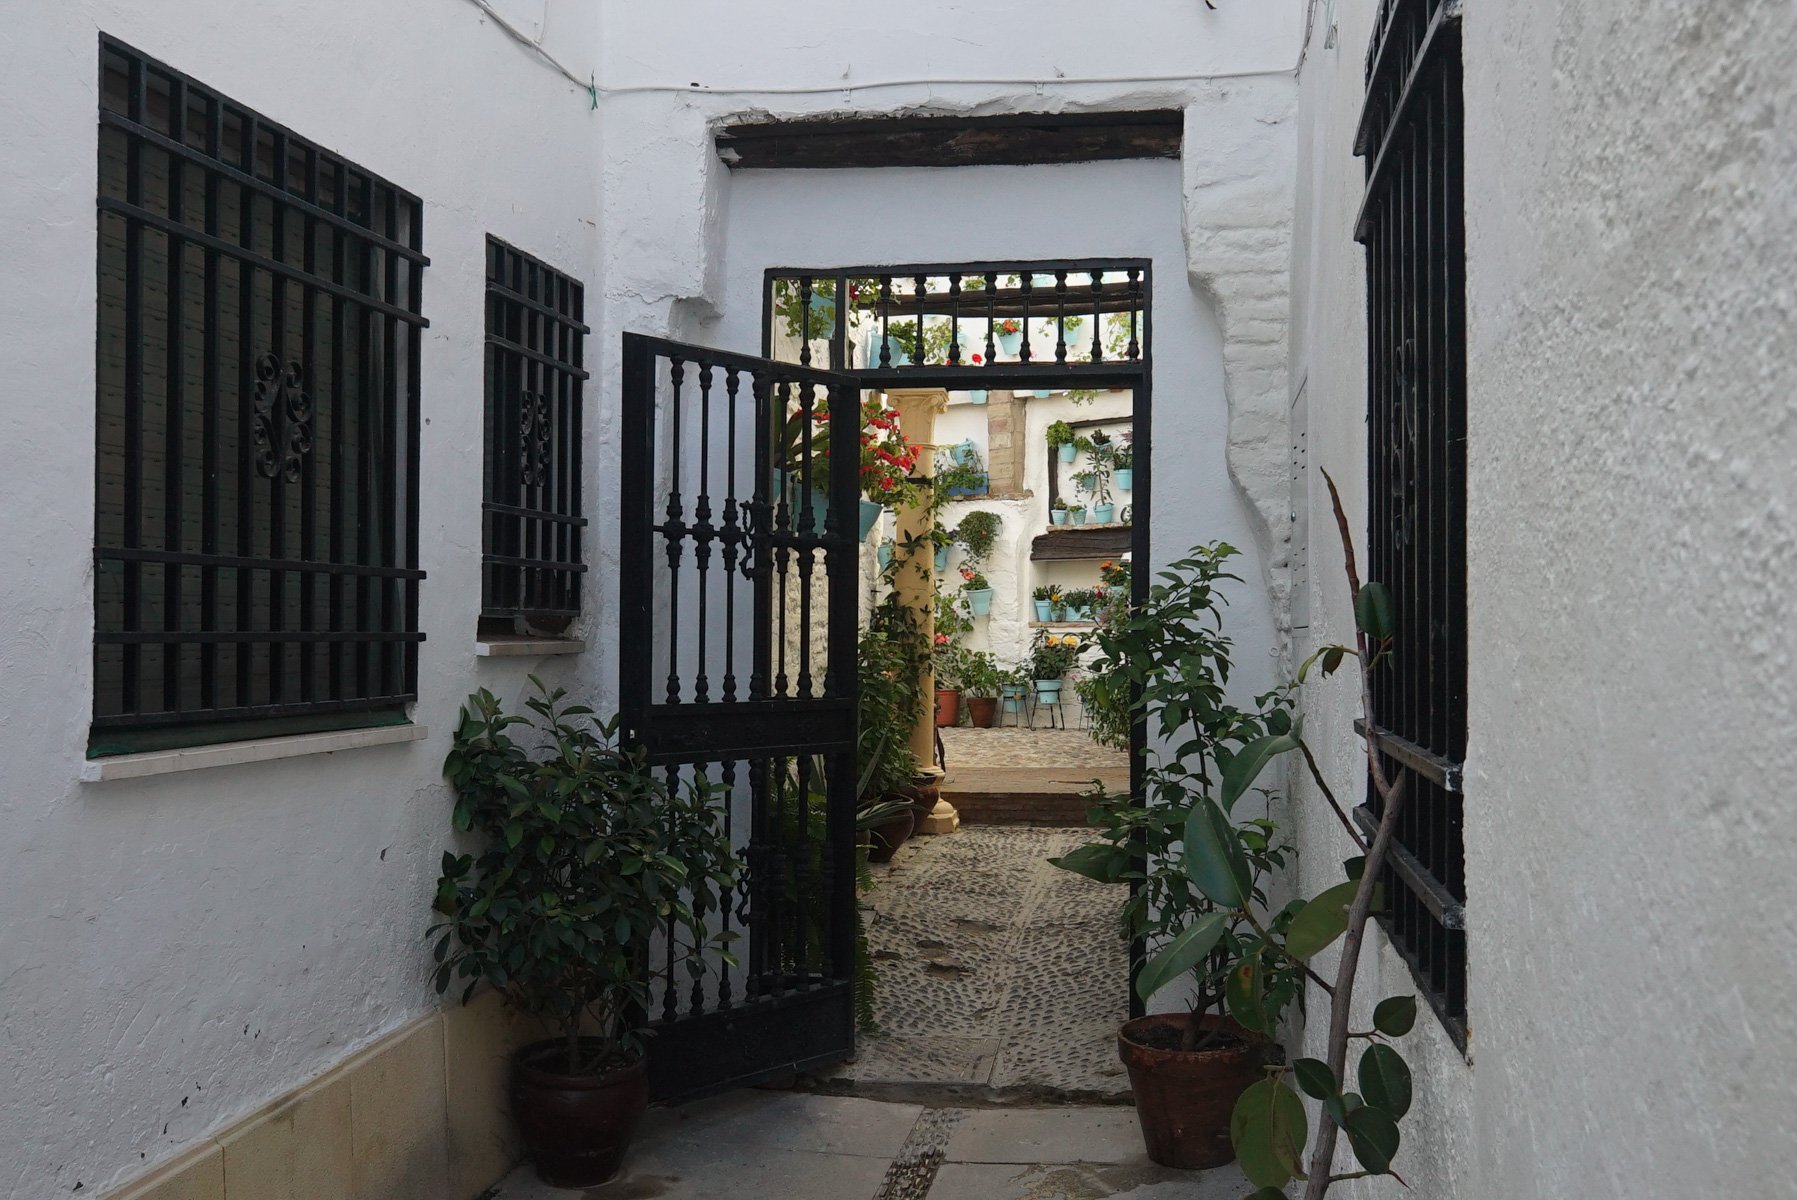 Patios que ver en Córdoba: La barrera 1